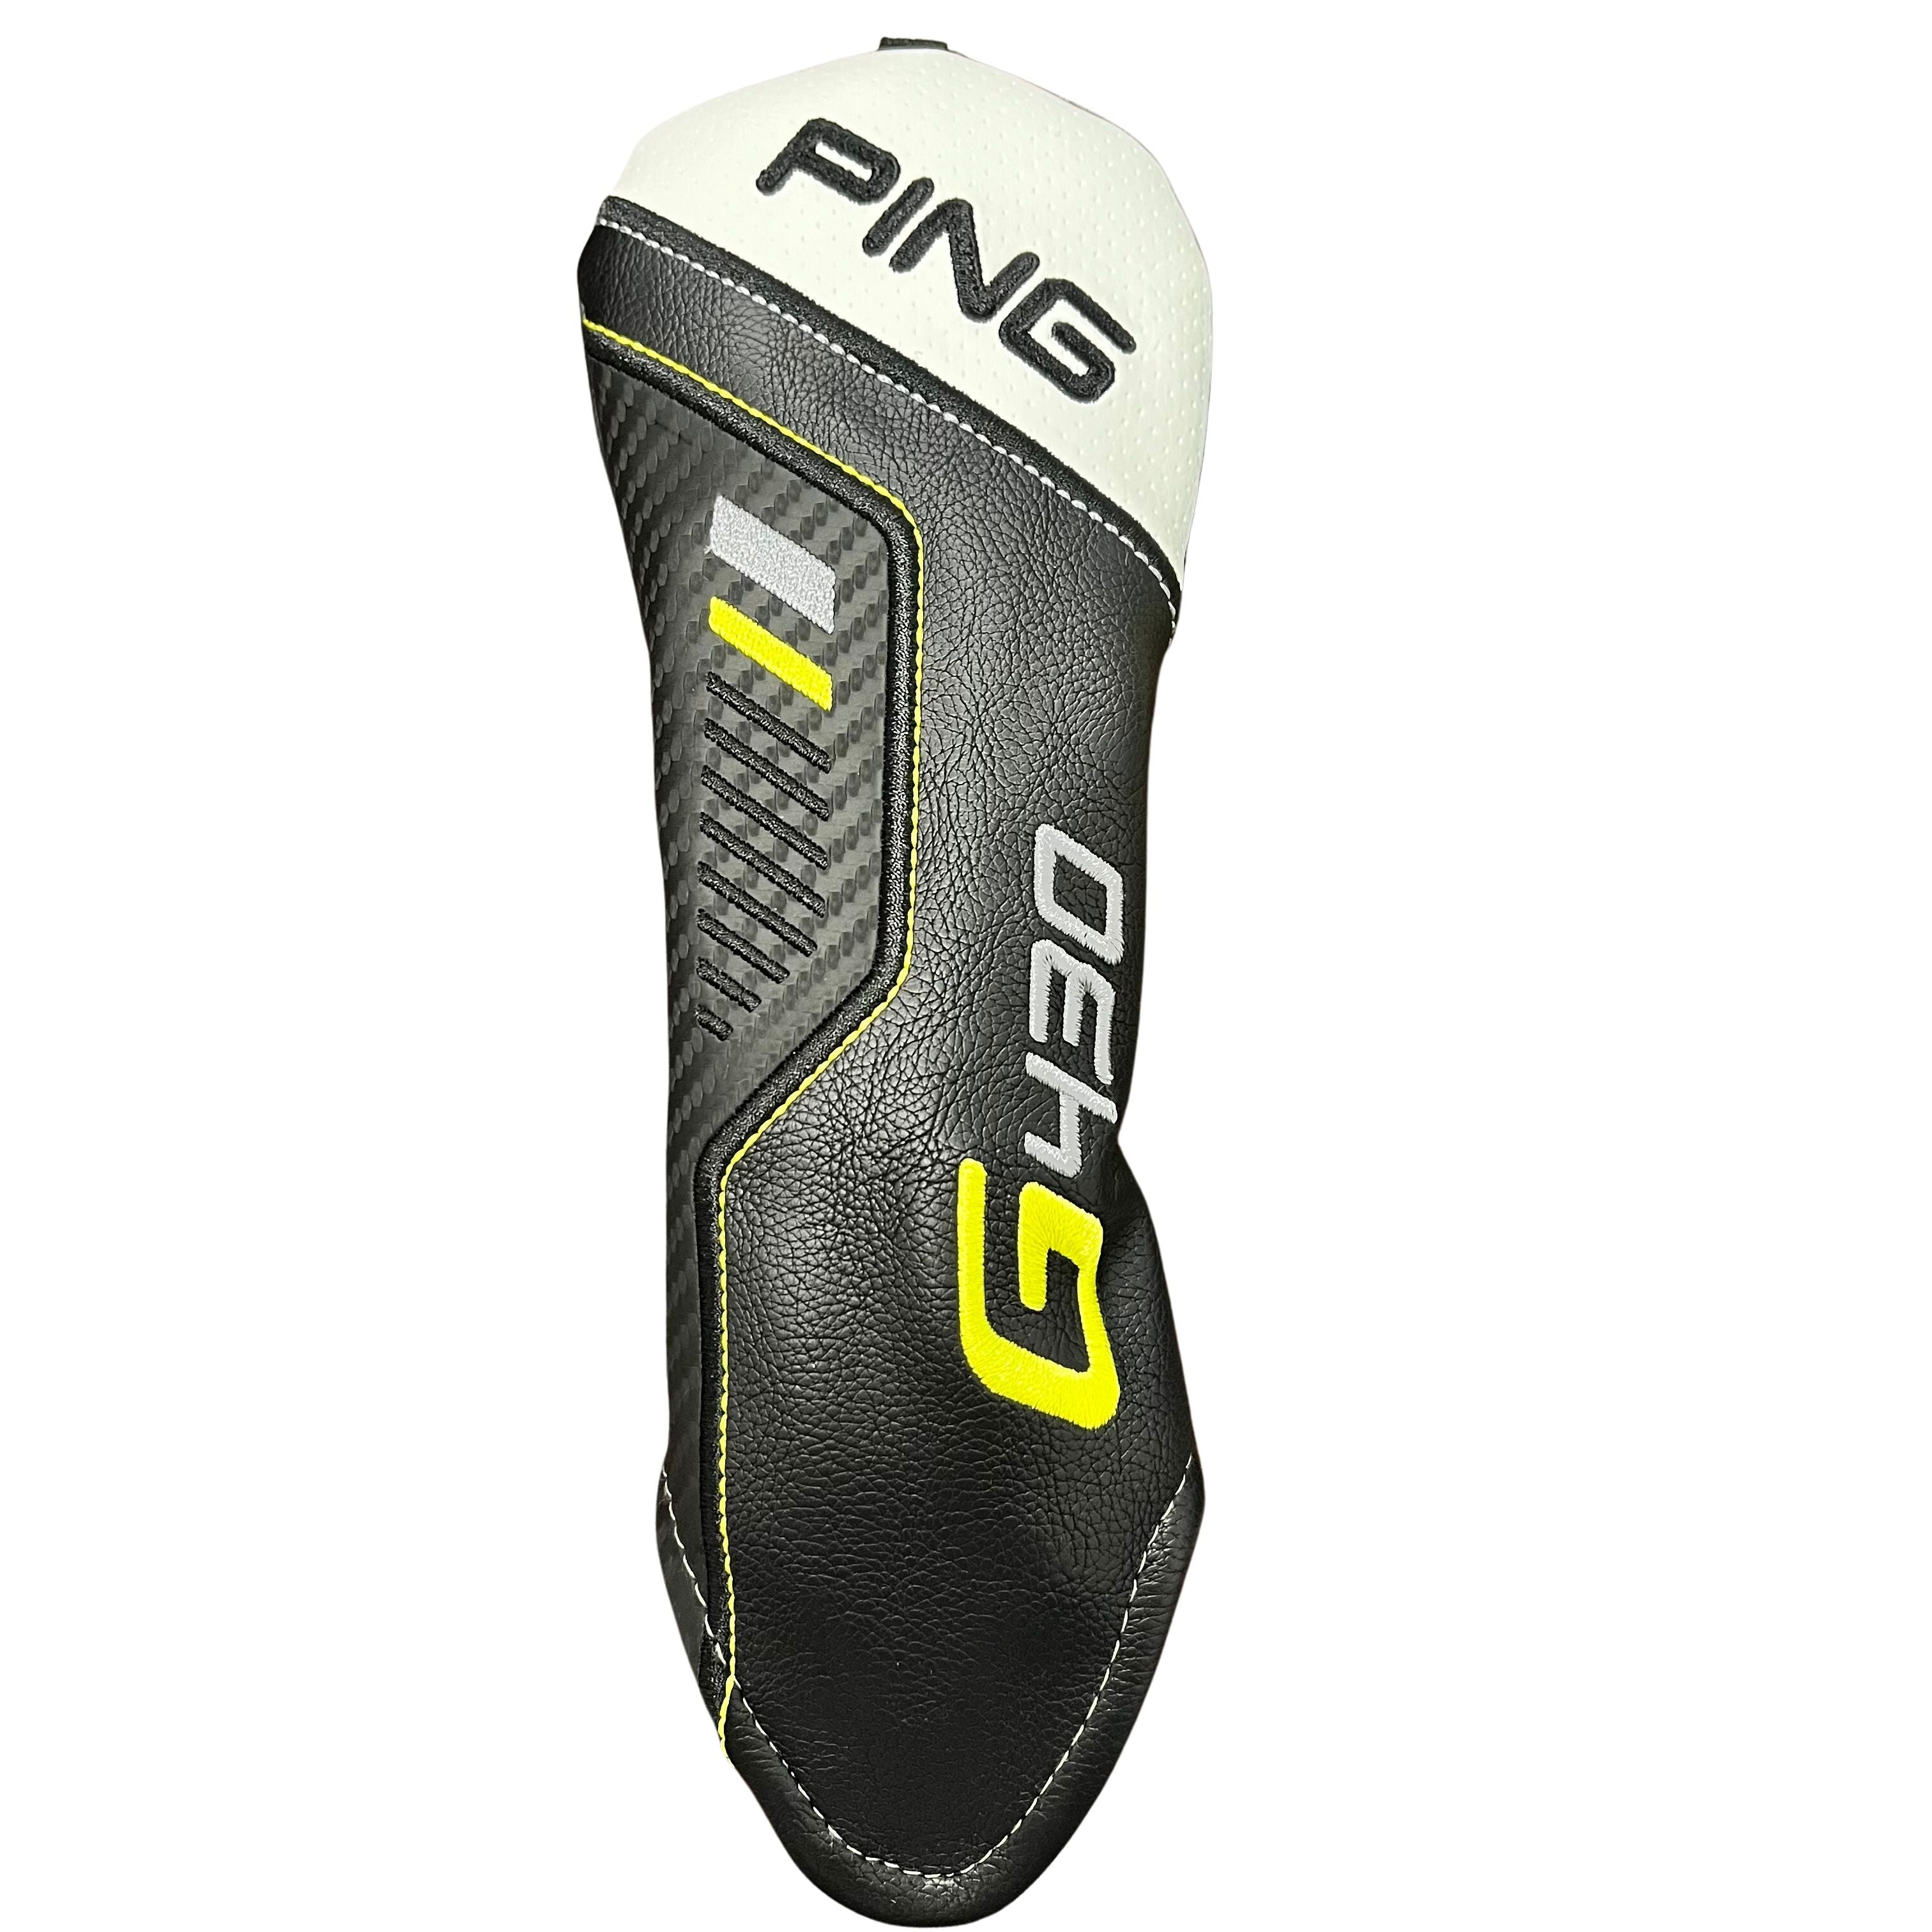 Ping G430 Hybrid Head Cover – GolfDirectNow.com